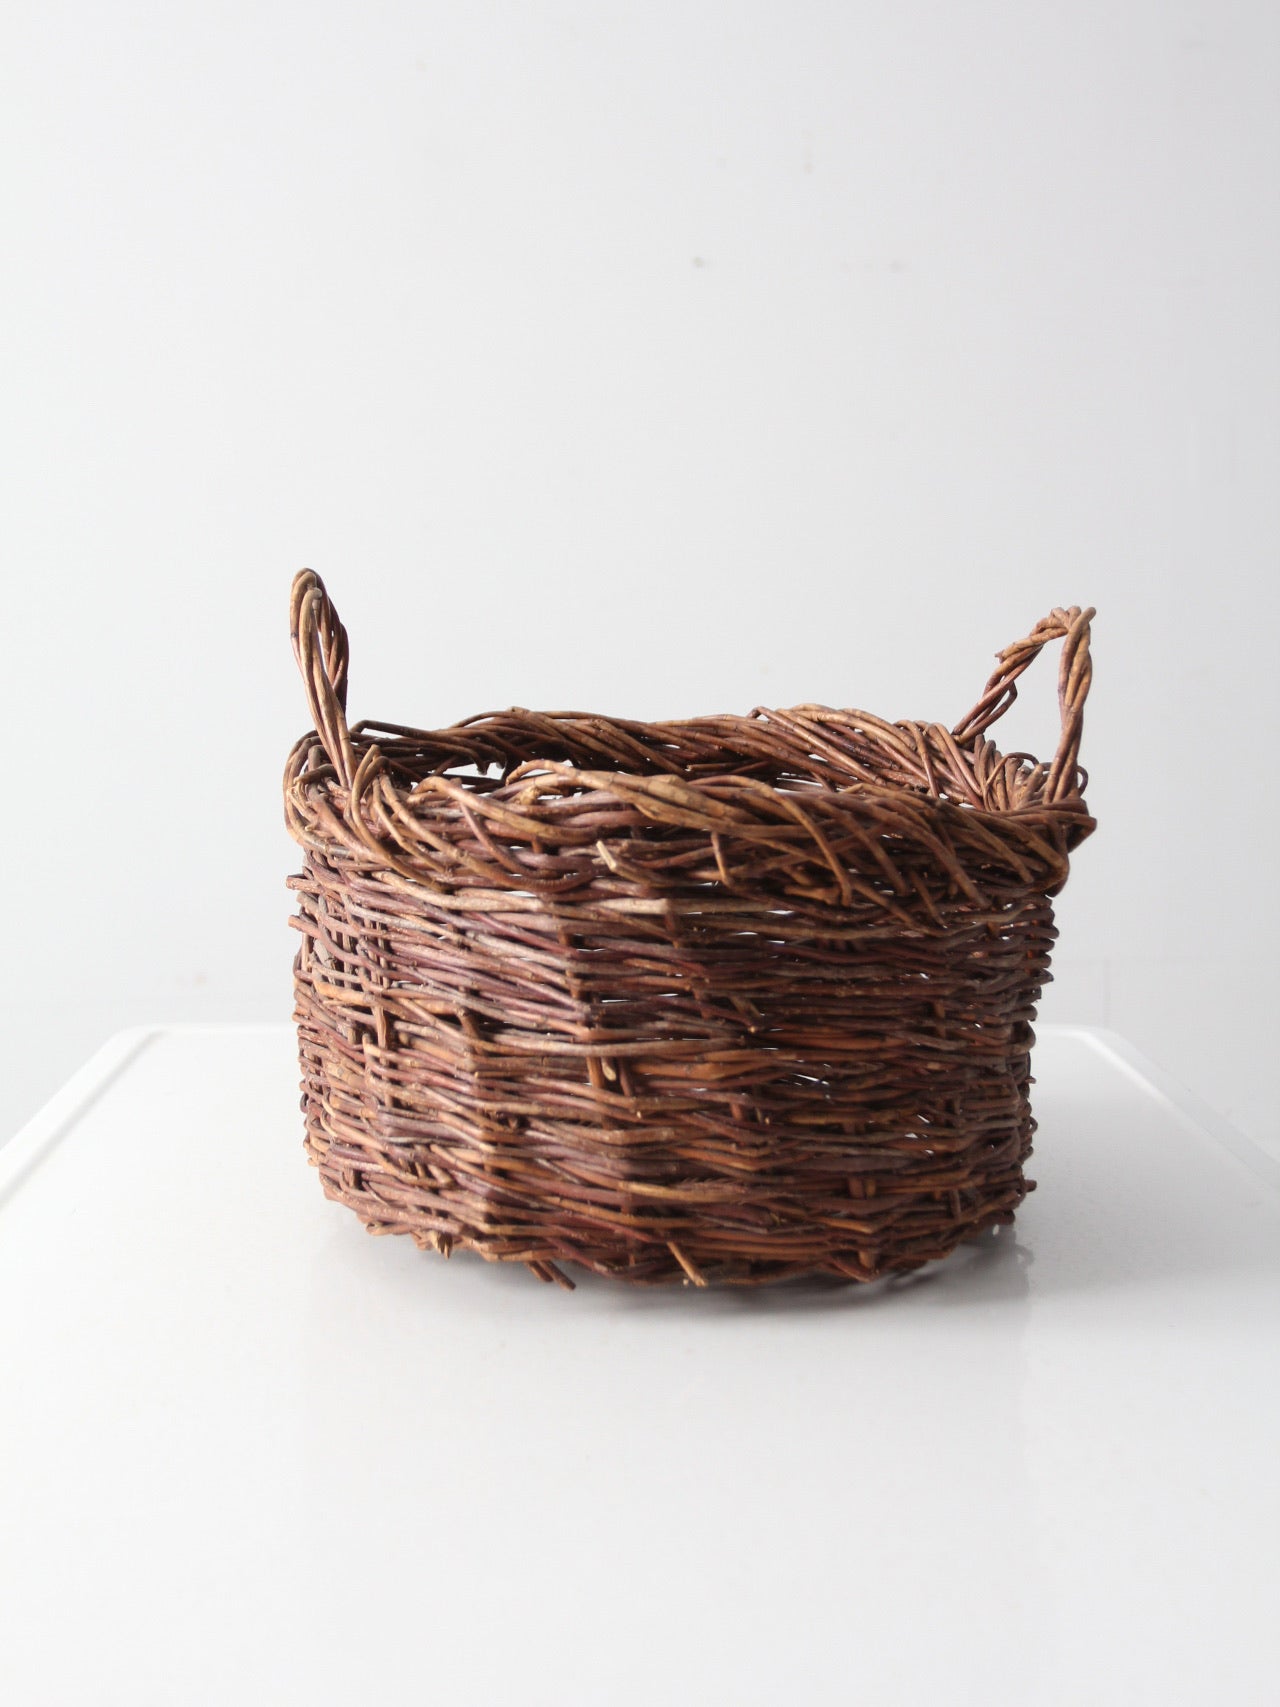 vintage wicker harvest basket